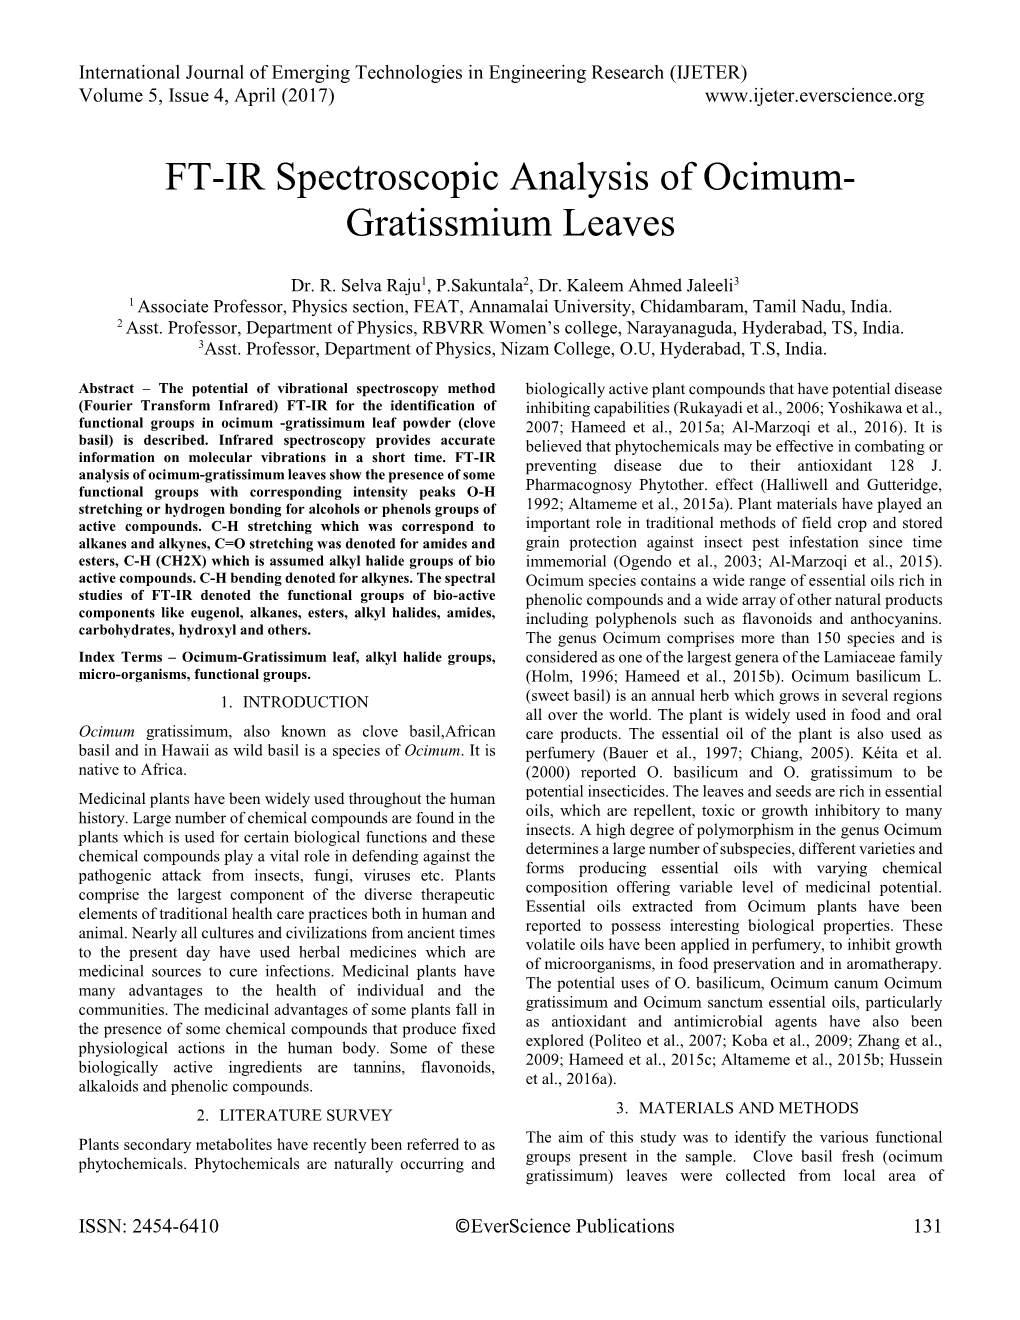 FT-IR Spectroscopic Analysis of Ocimum- Gratissmium Leaves